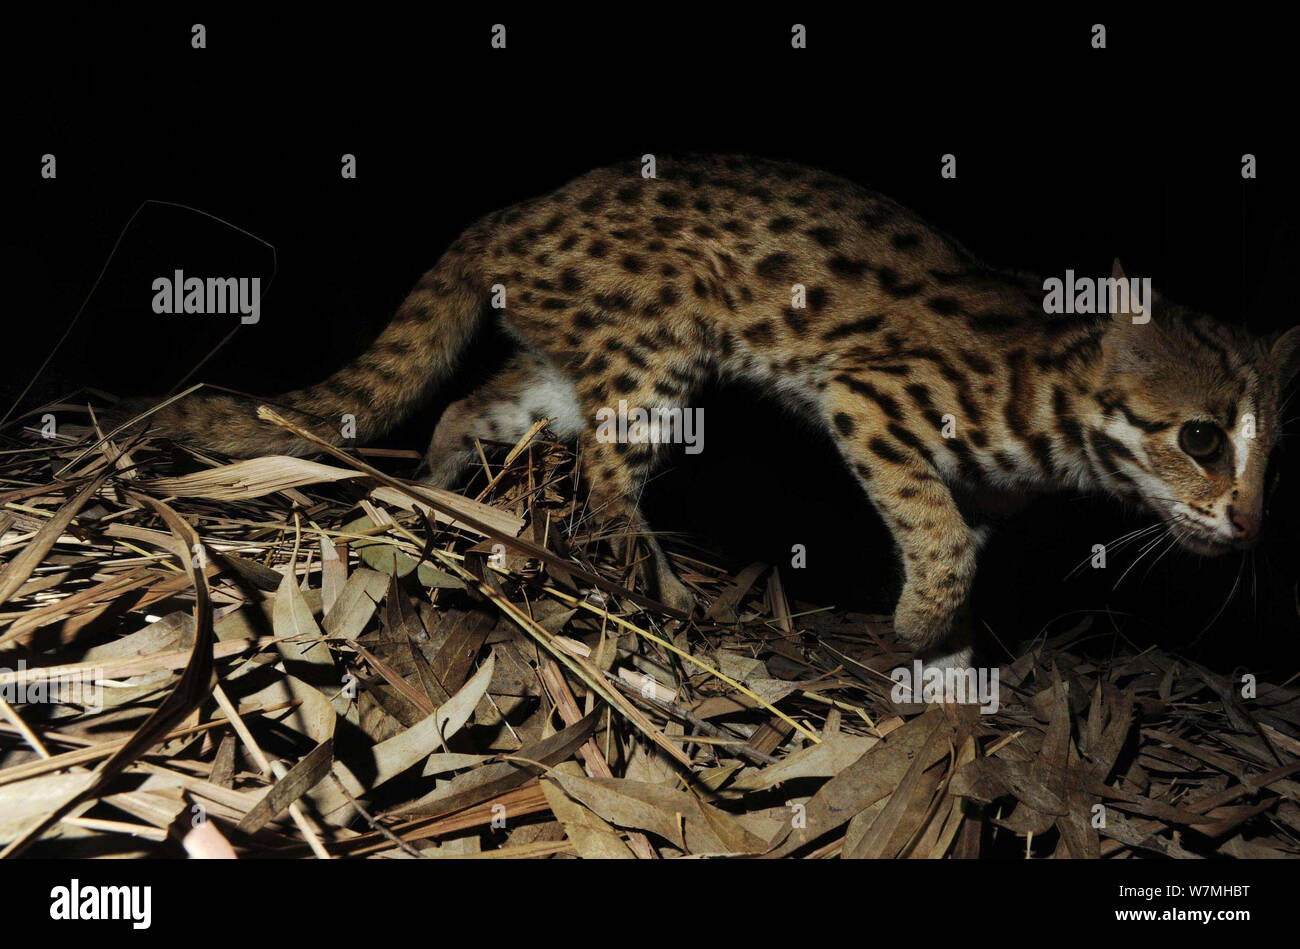 Chat-léopard (Prionailurus bengalensis) capturés la nuit par caméra piège, Nonggang National Nature Reserve, dans la province de Guangxi, Chine. Banque D'Images